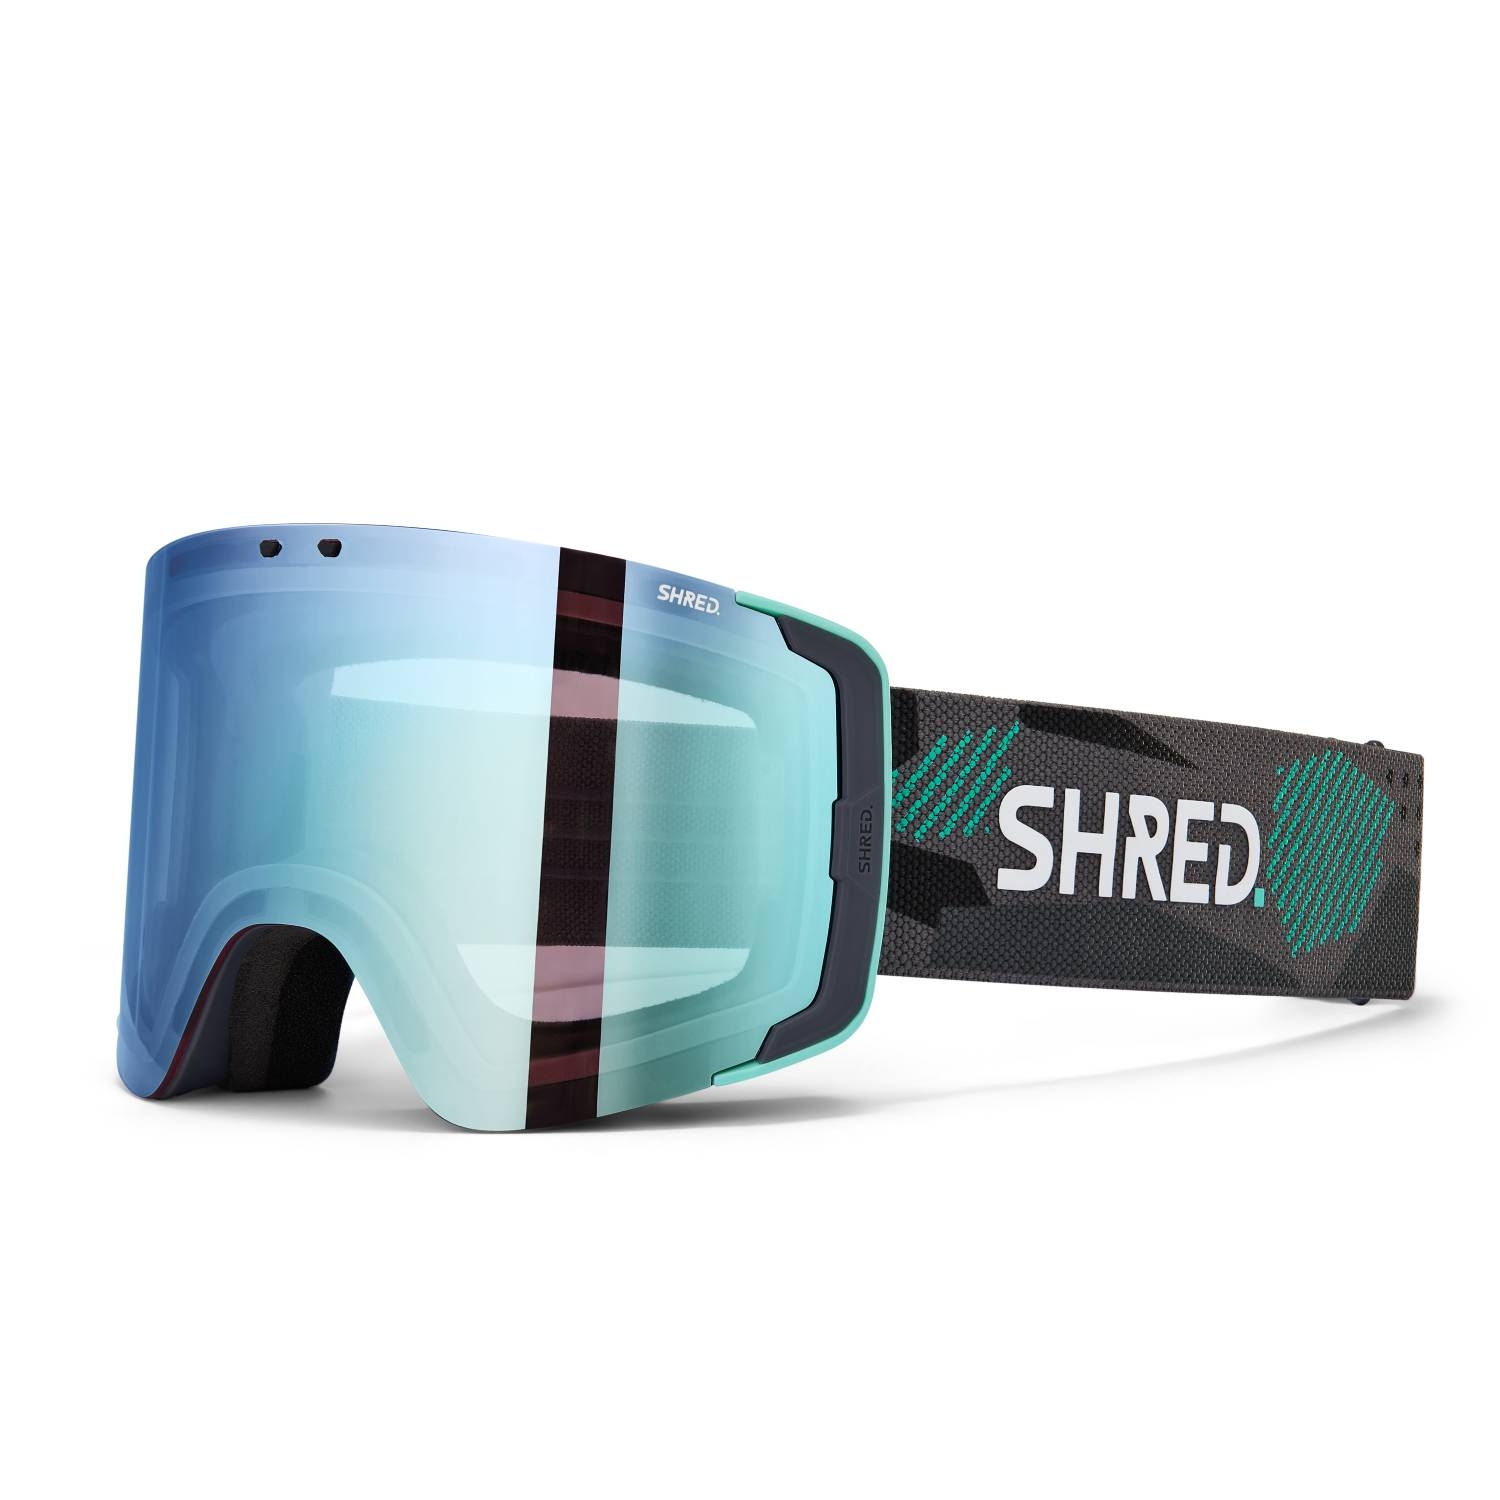 Strobe - Ski & snowboard wear, Clean & sustainable design